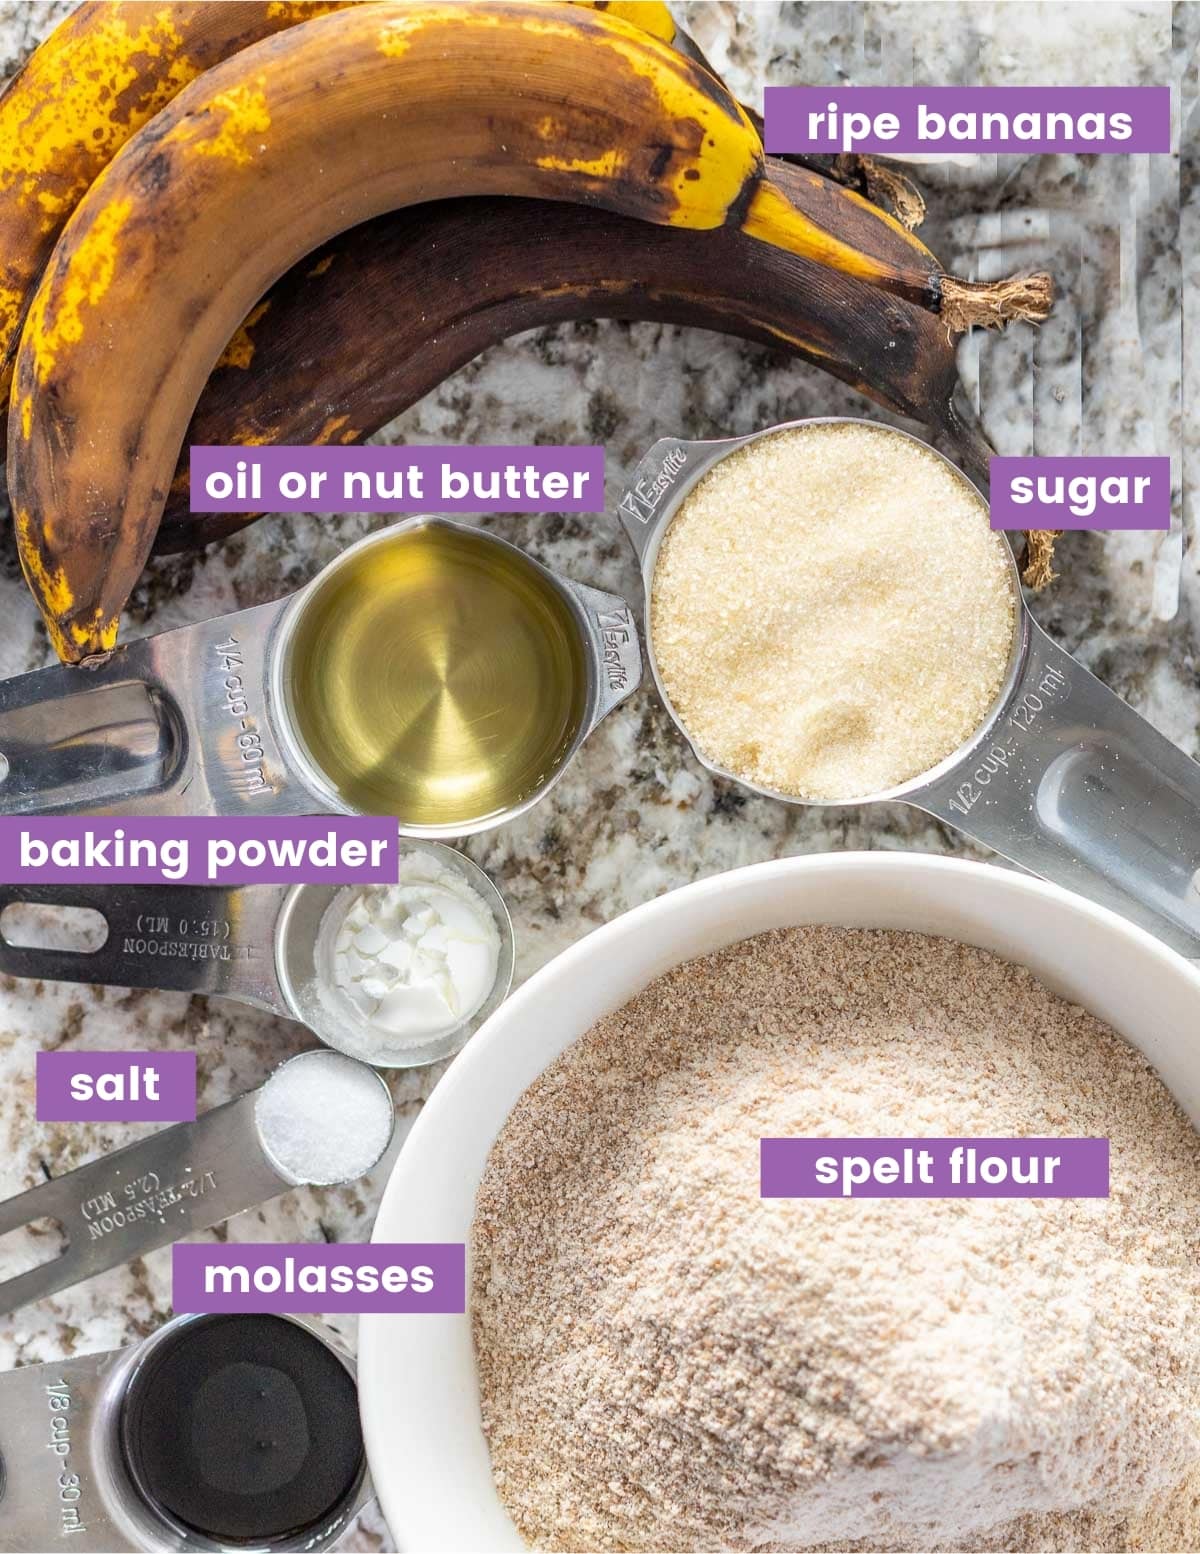 Ingredients for making spelt banana bread